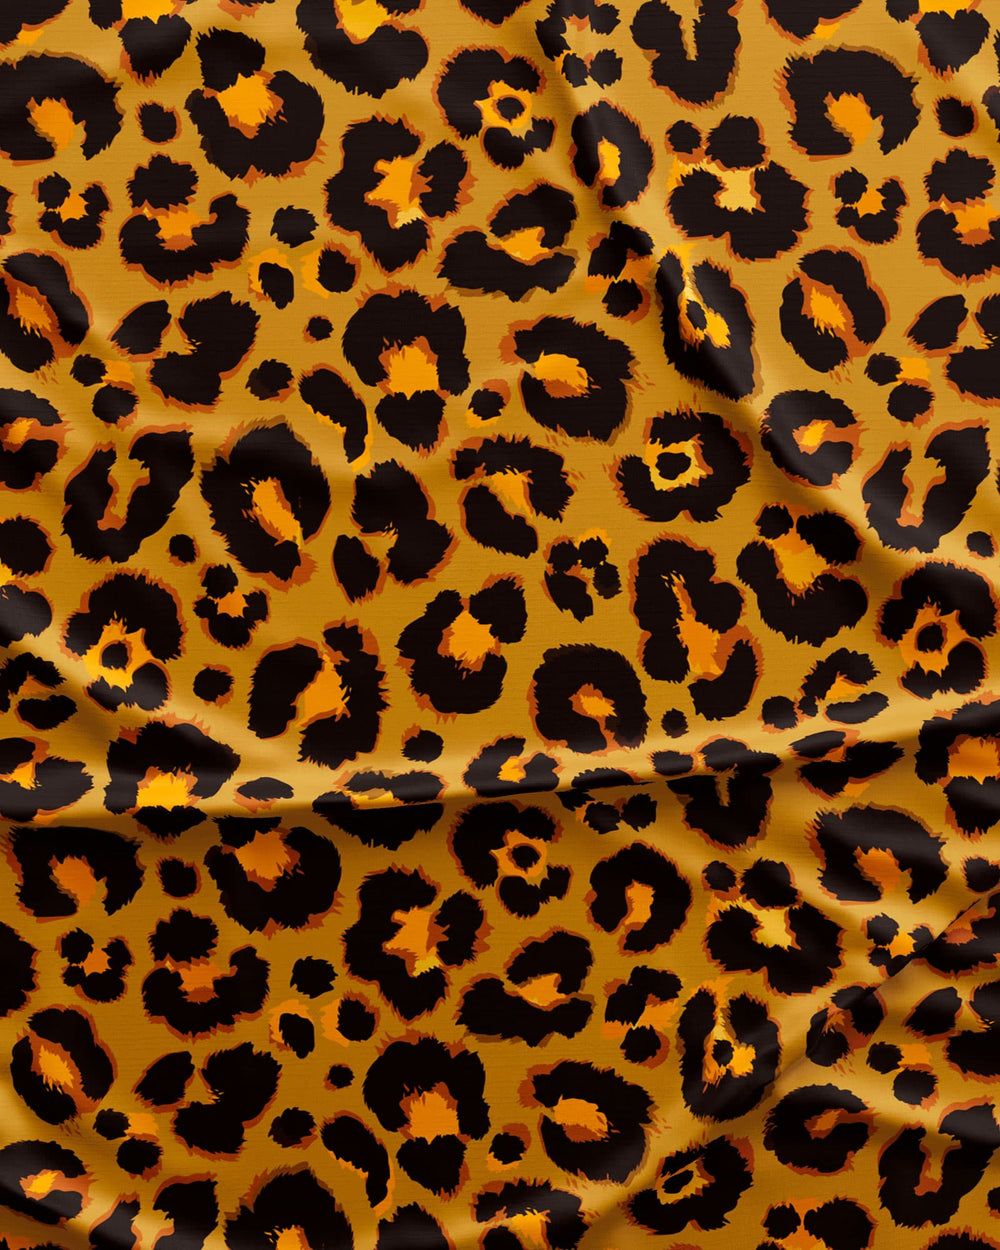 Leopard print boxer shorts